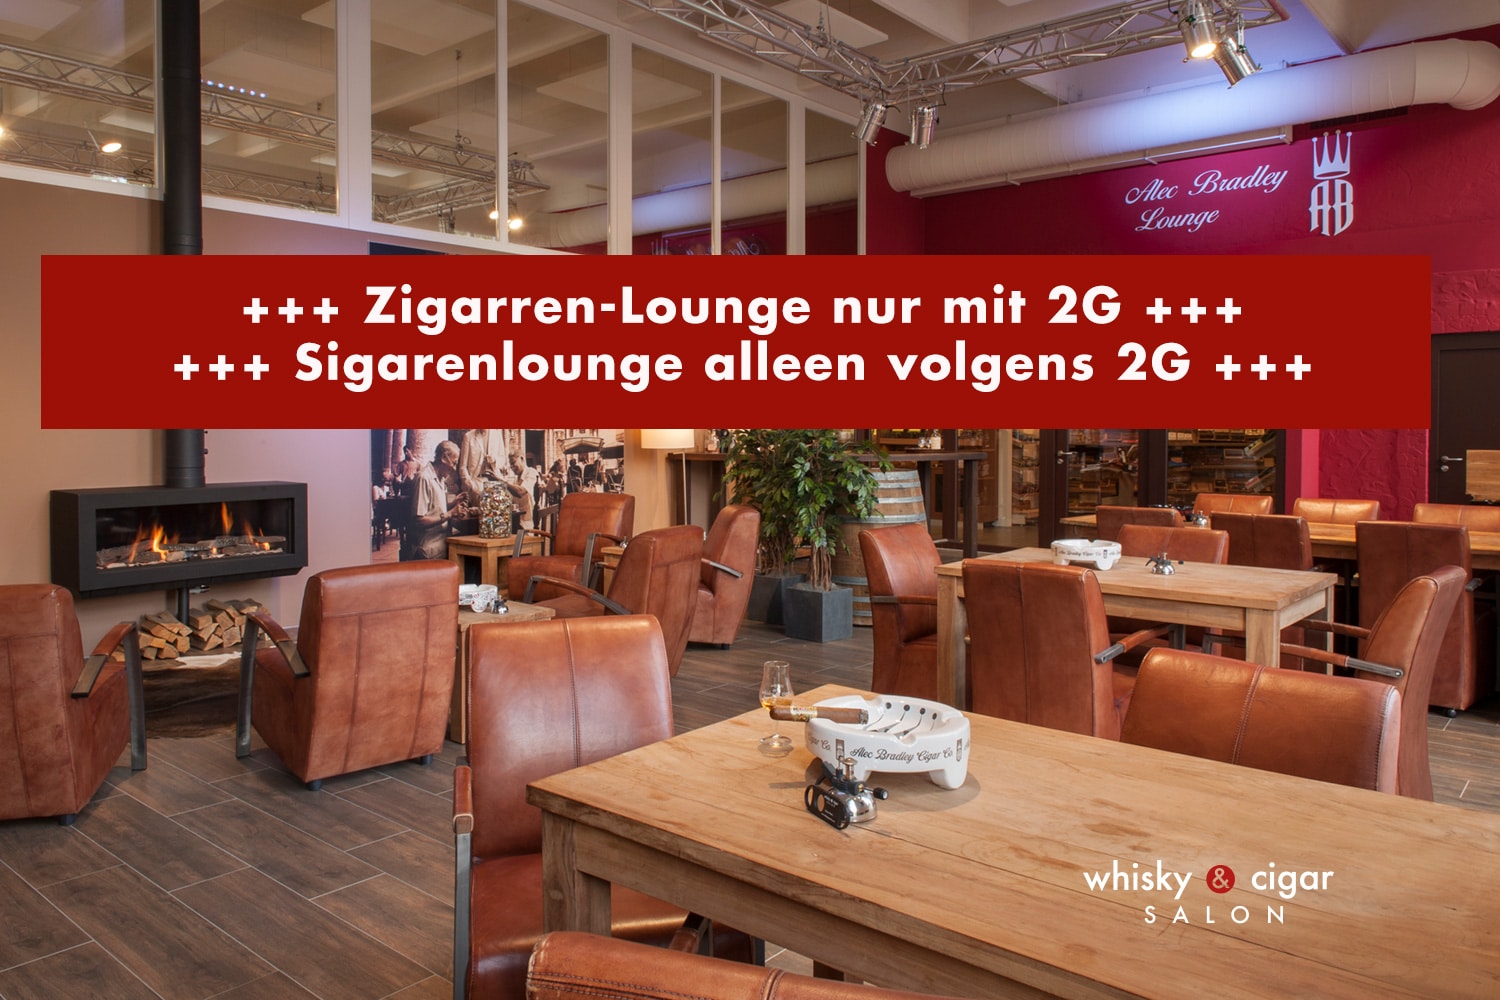 Zigarren-Lounge nur mit 2G